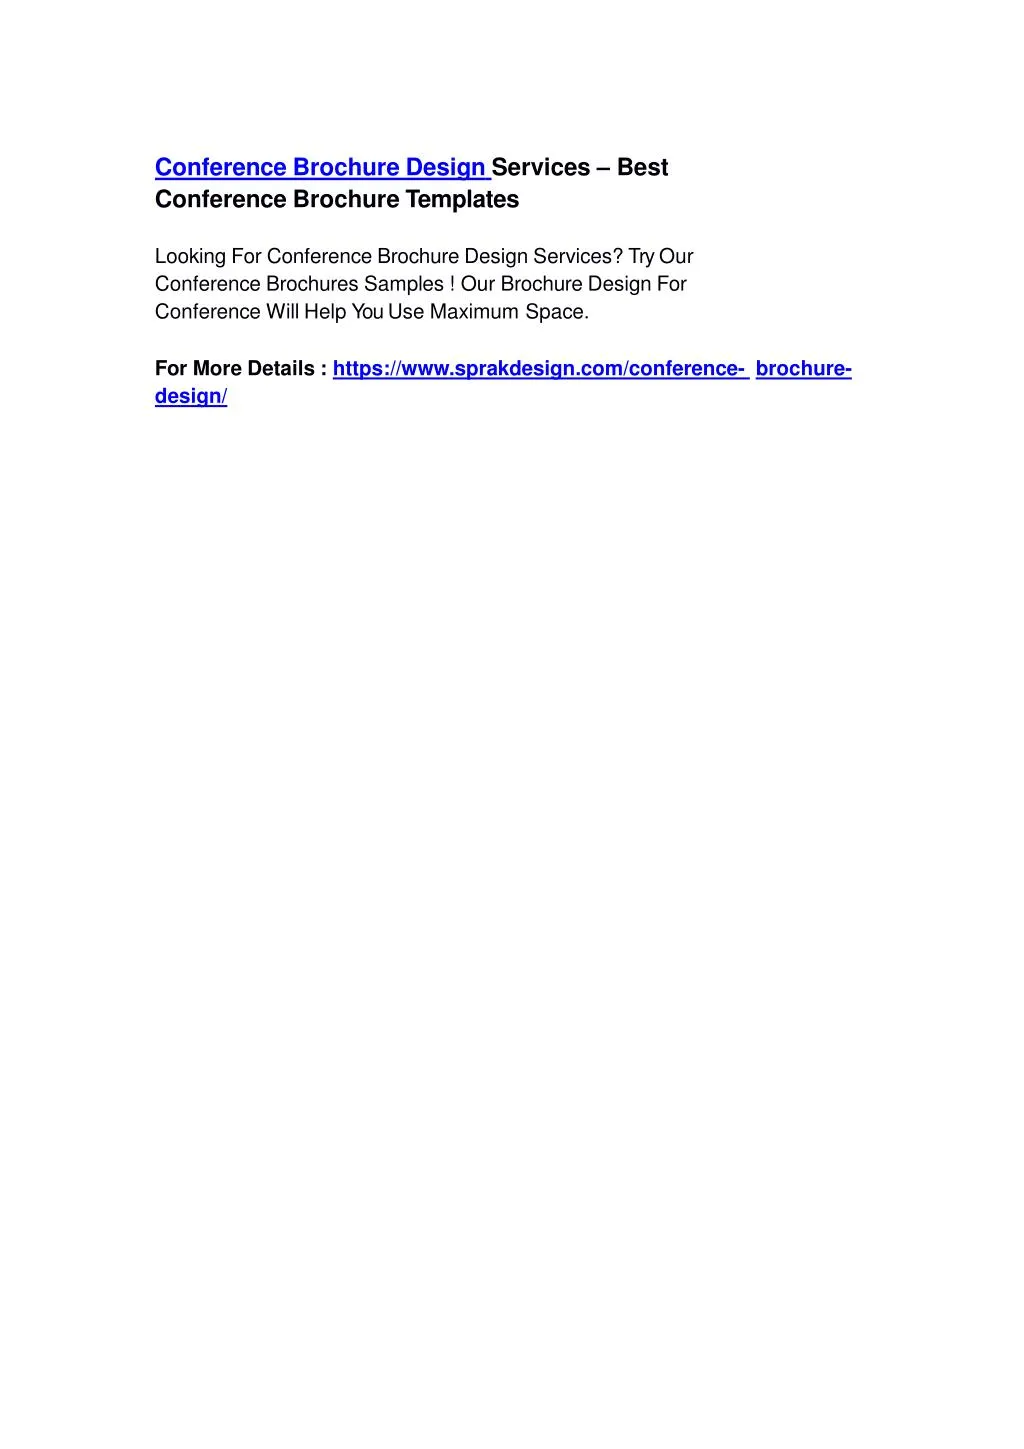 conference brochure design services best